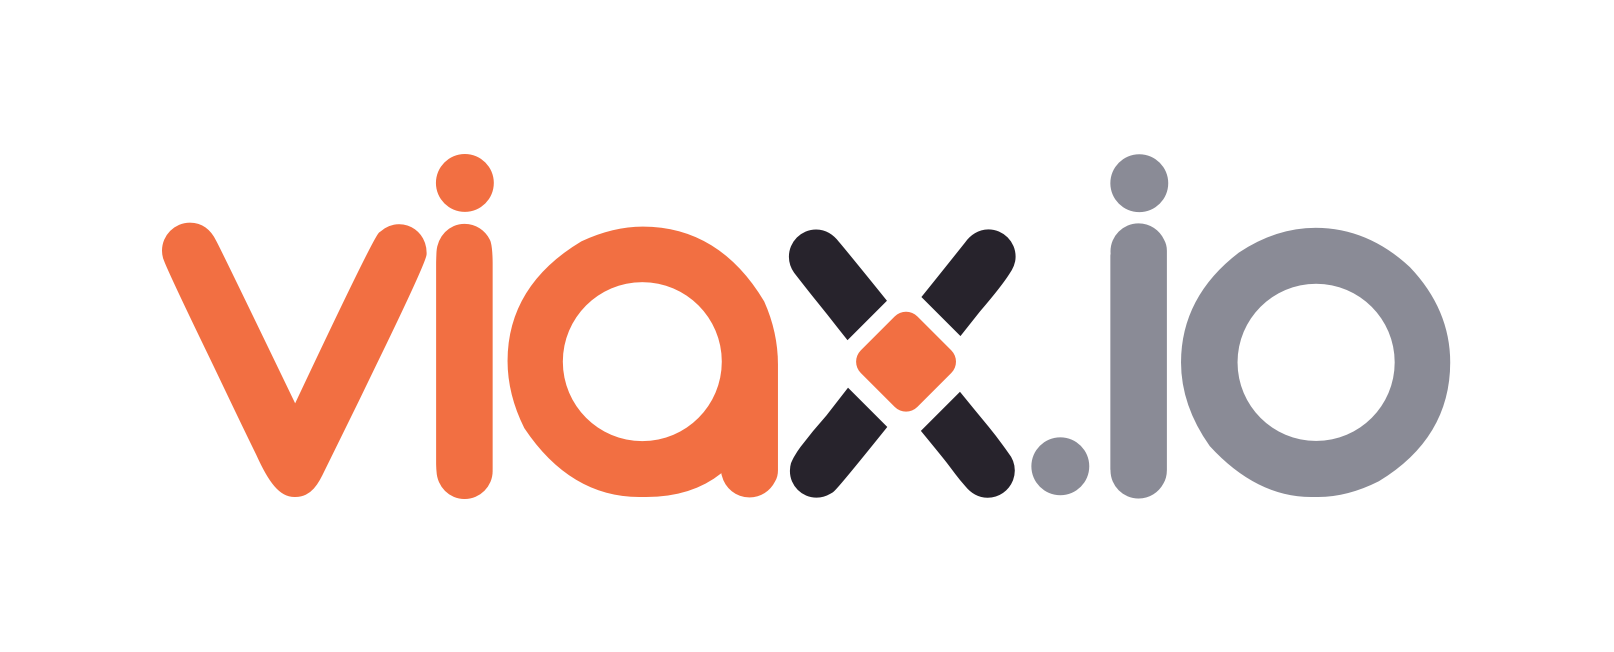 viax logo light